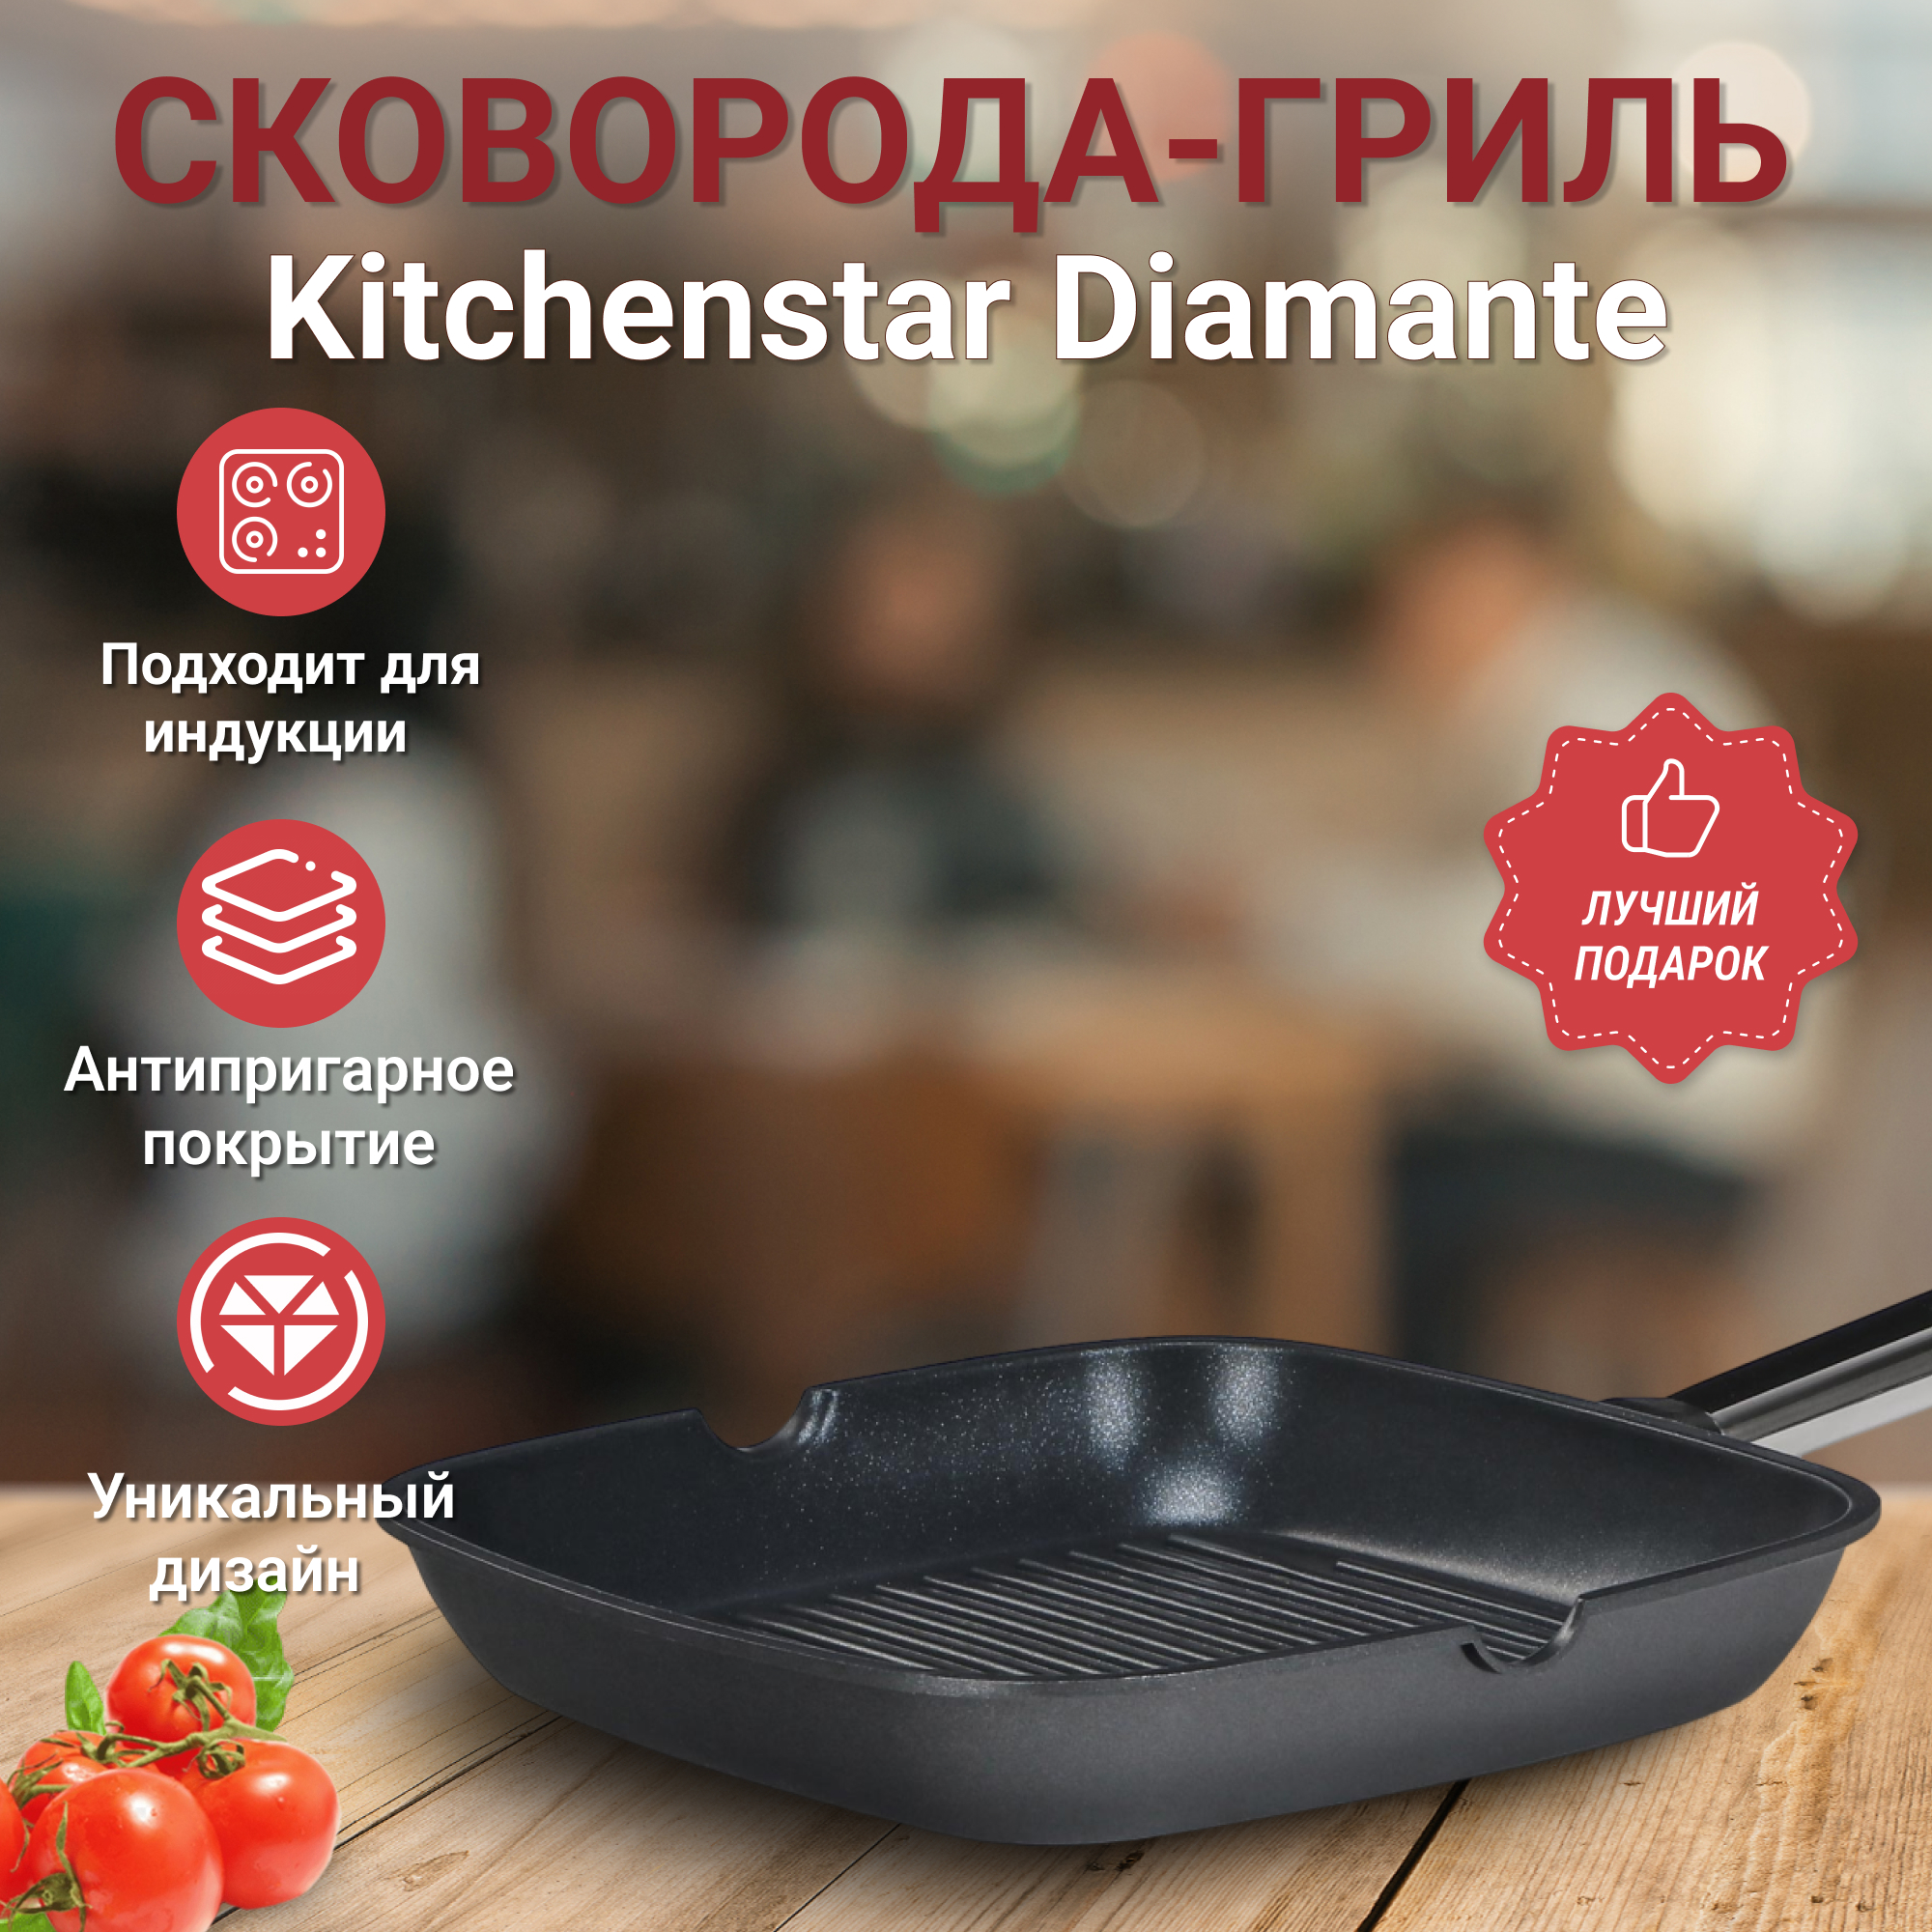 Сковорода-гриль Kitchen star Diamante 24 см, цвет черный - фото 5